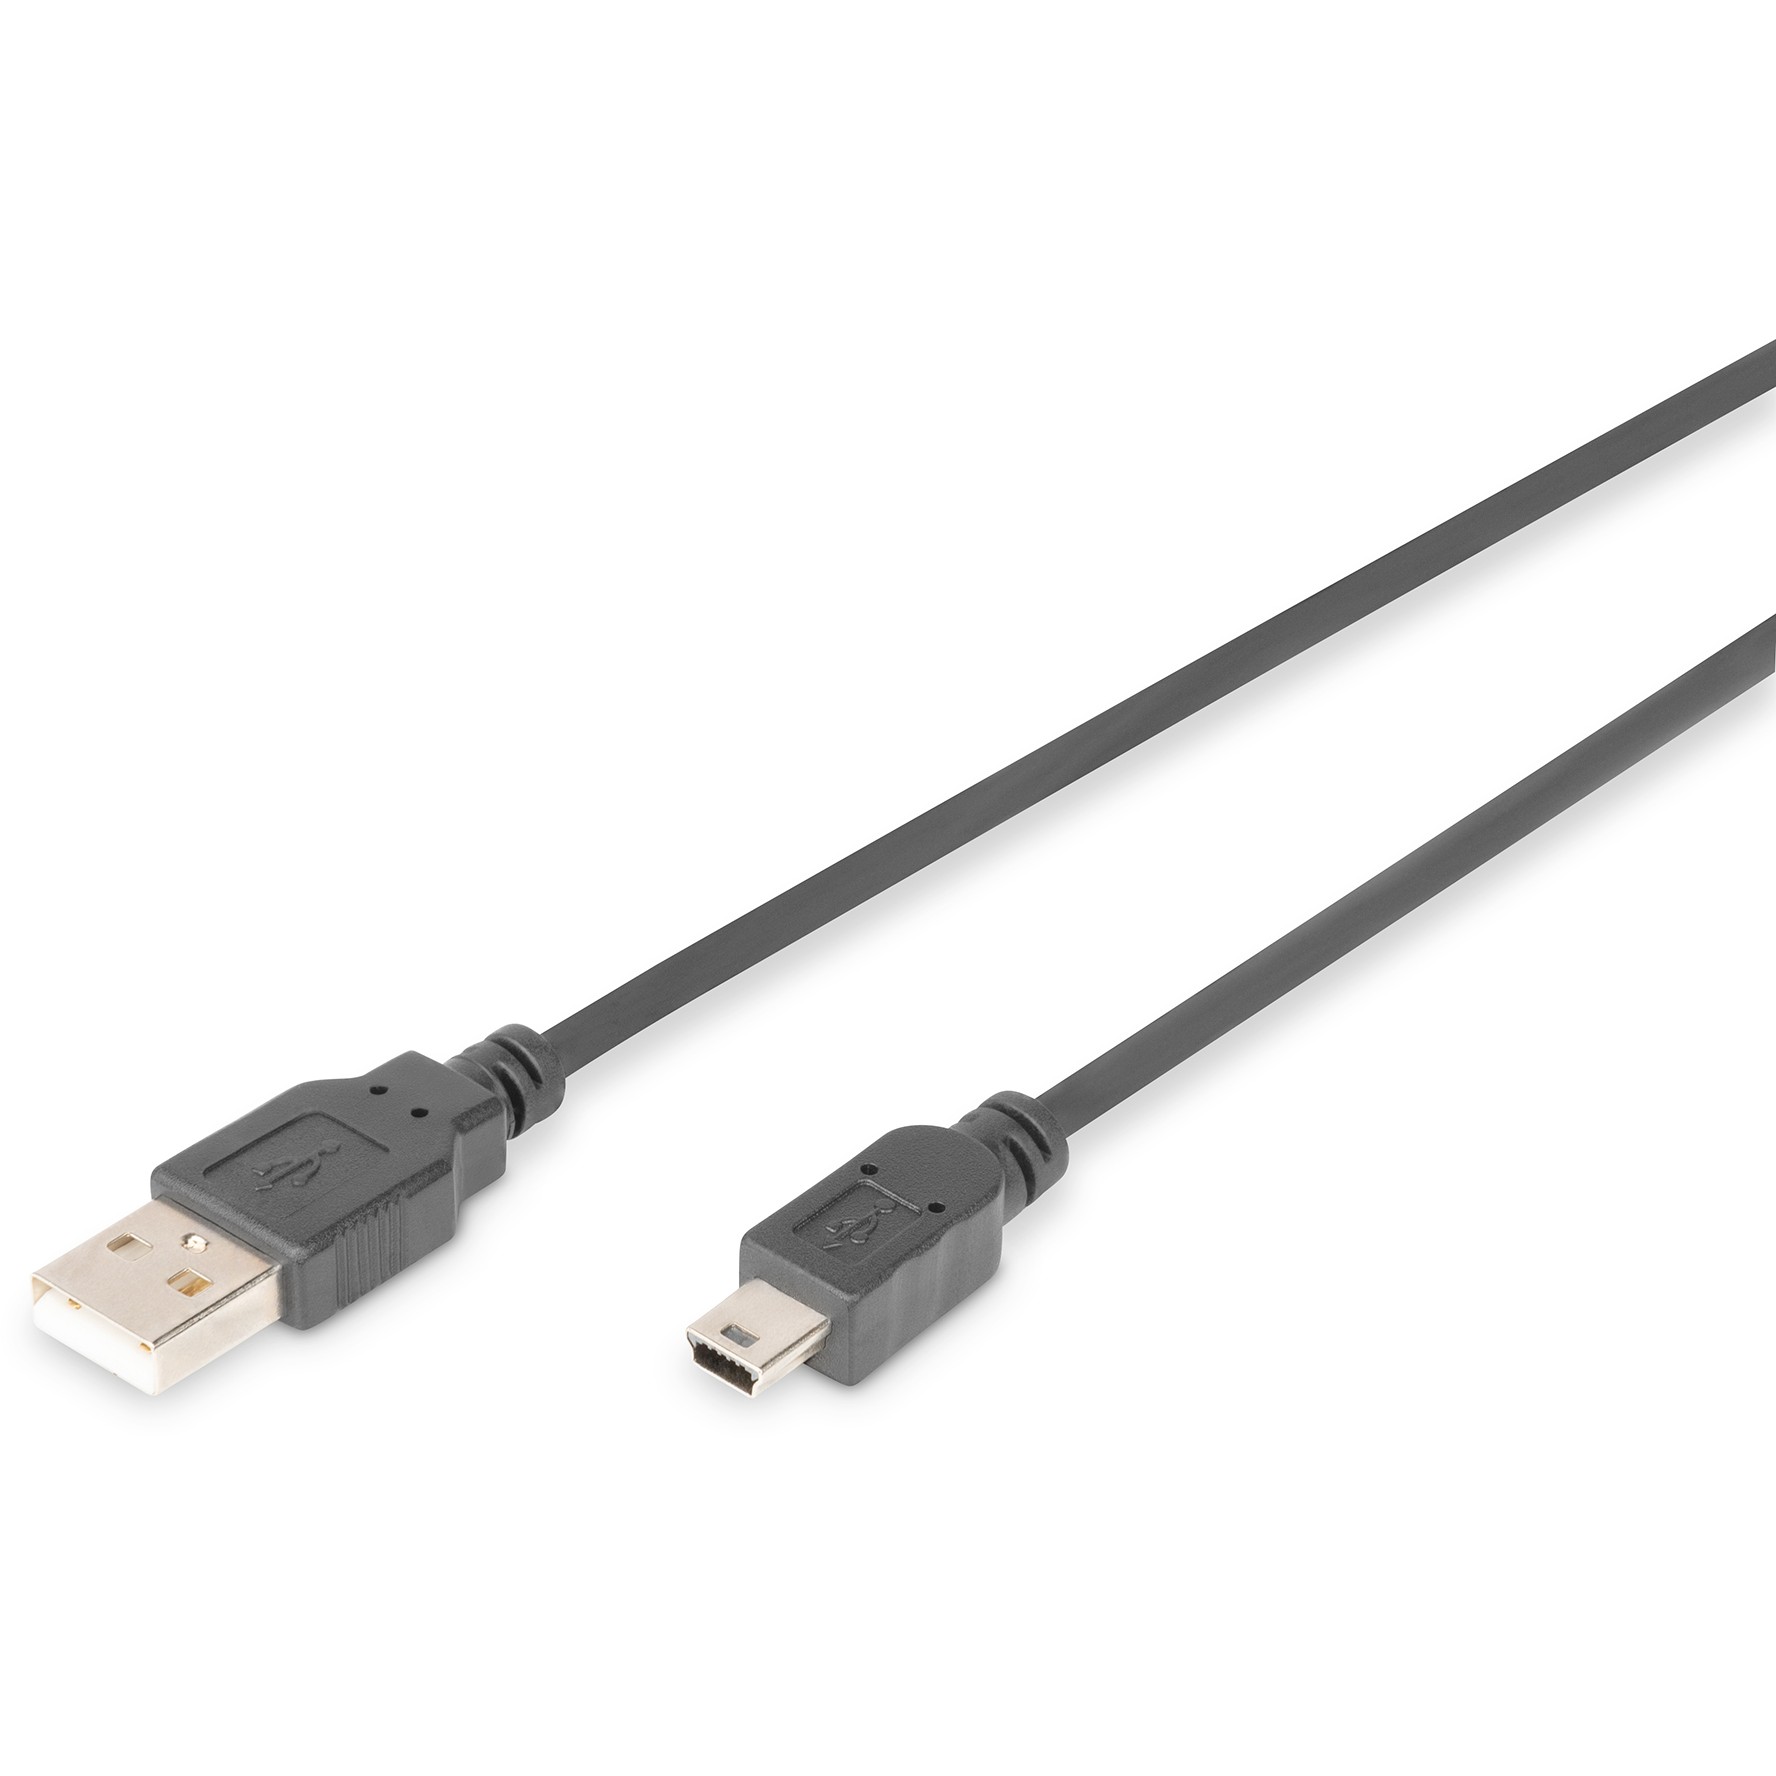 ASSMANN 200xUSB2.0 Anschlusskabel USB A auf USB mini B 5pin M/M beige 2m bulk